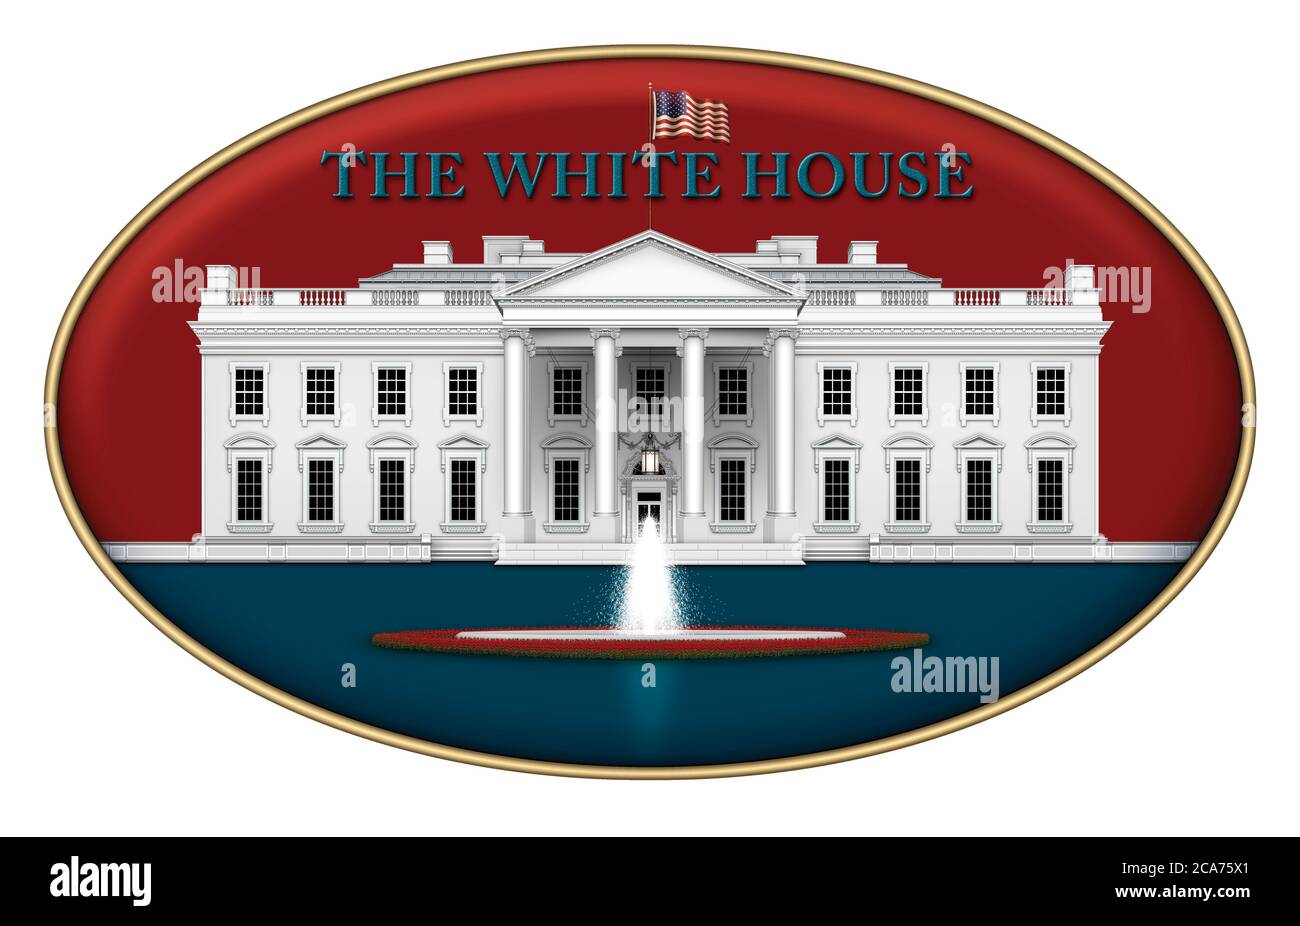 Illustration numérique de la vue nord de la Maison Blanche, du jardin de roses et de la fontaine – dans un design emblématique rouge et bleu. Illustration 3D Banque D'Images